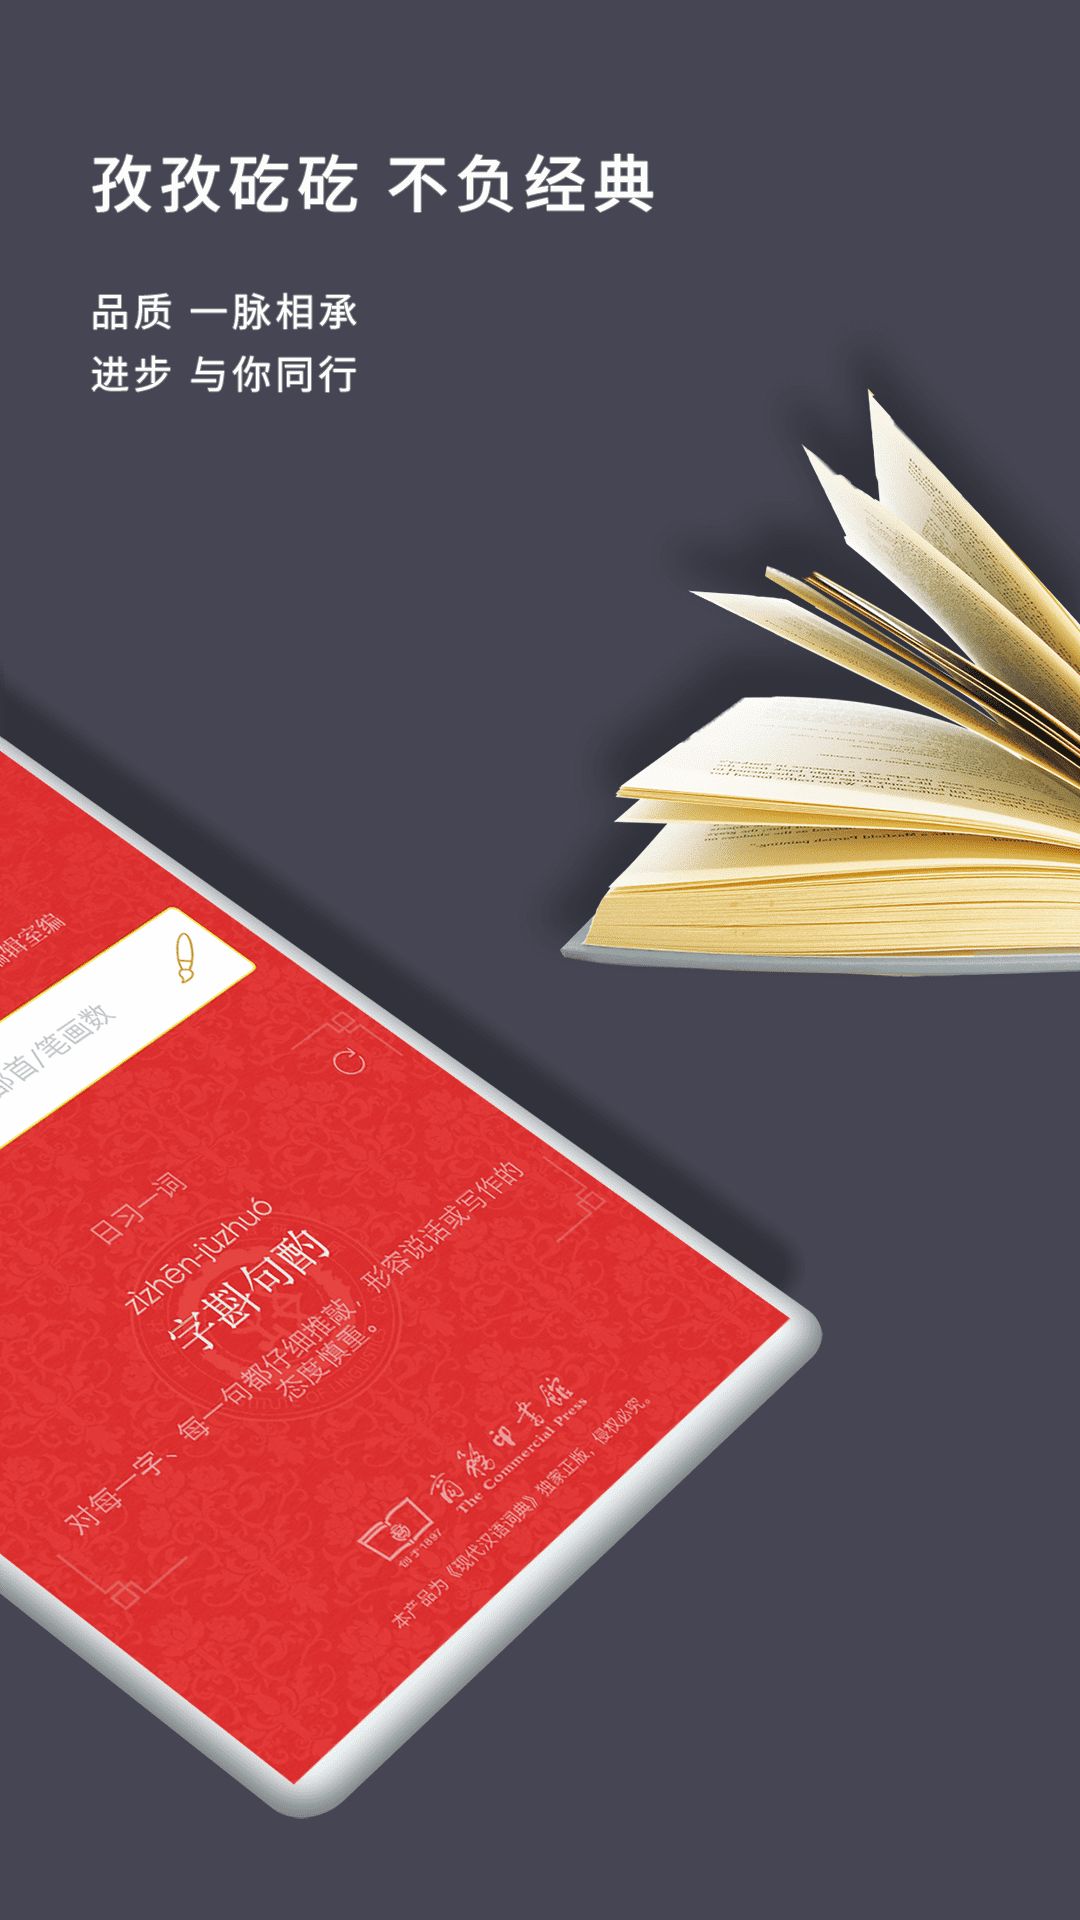 现代汉语词典第七版app图1